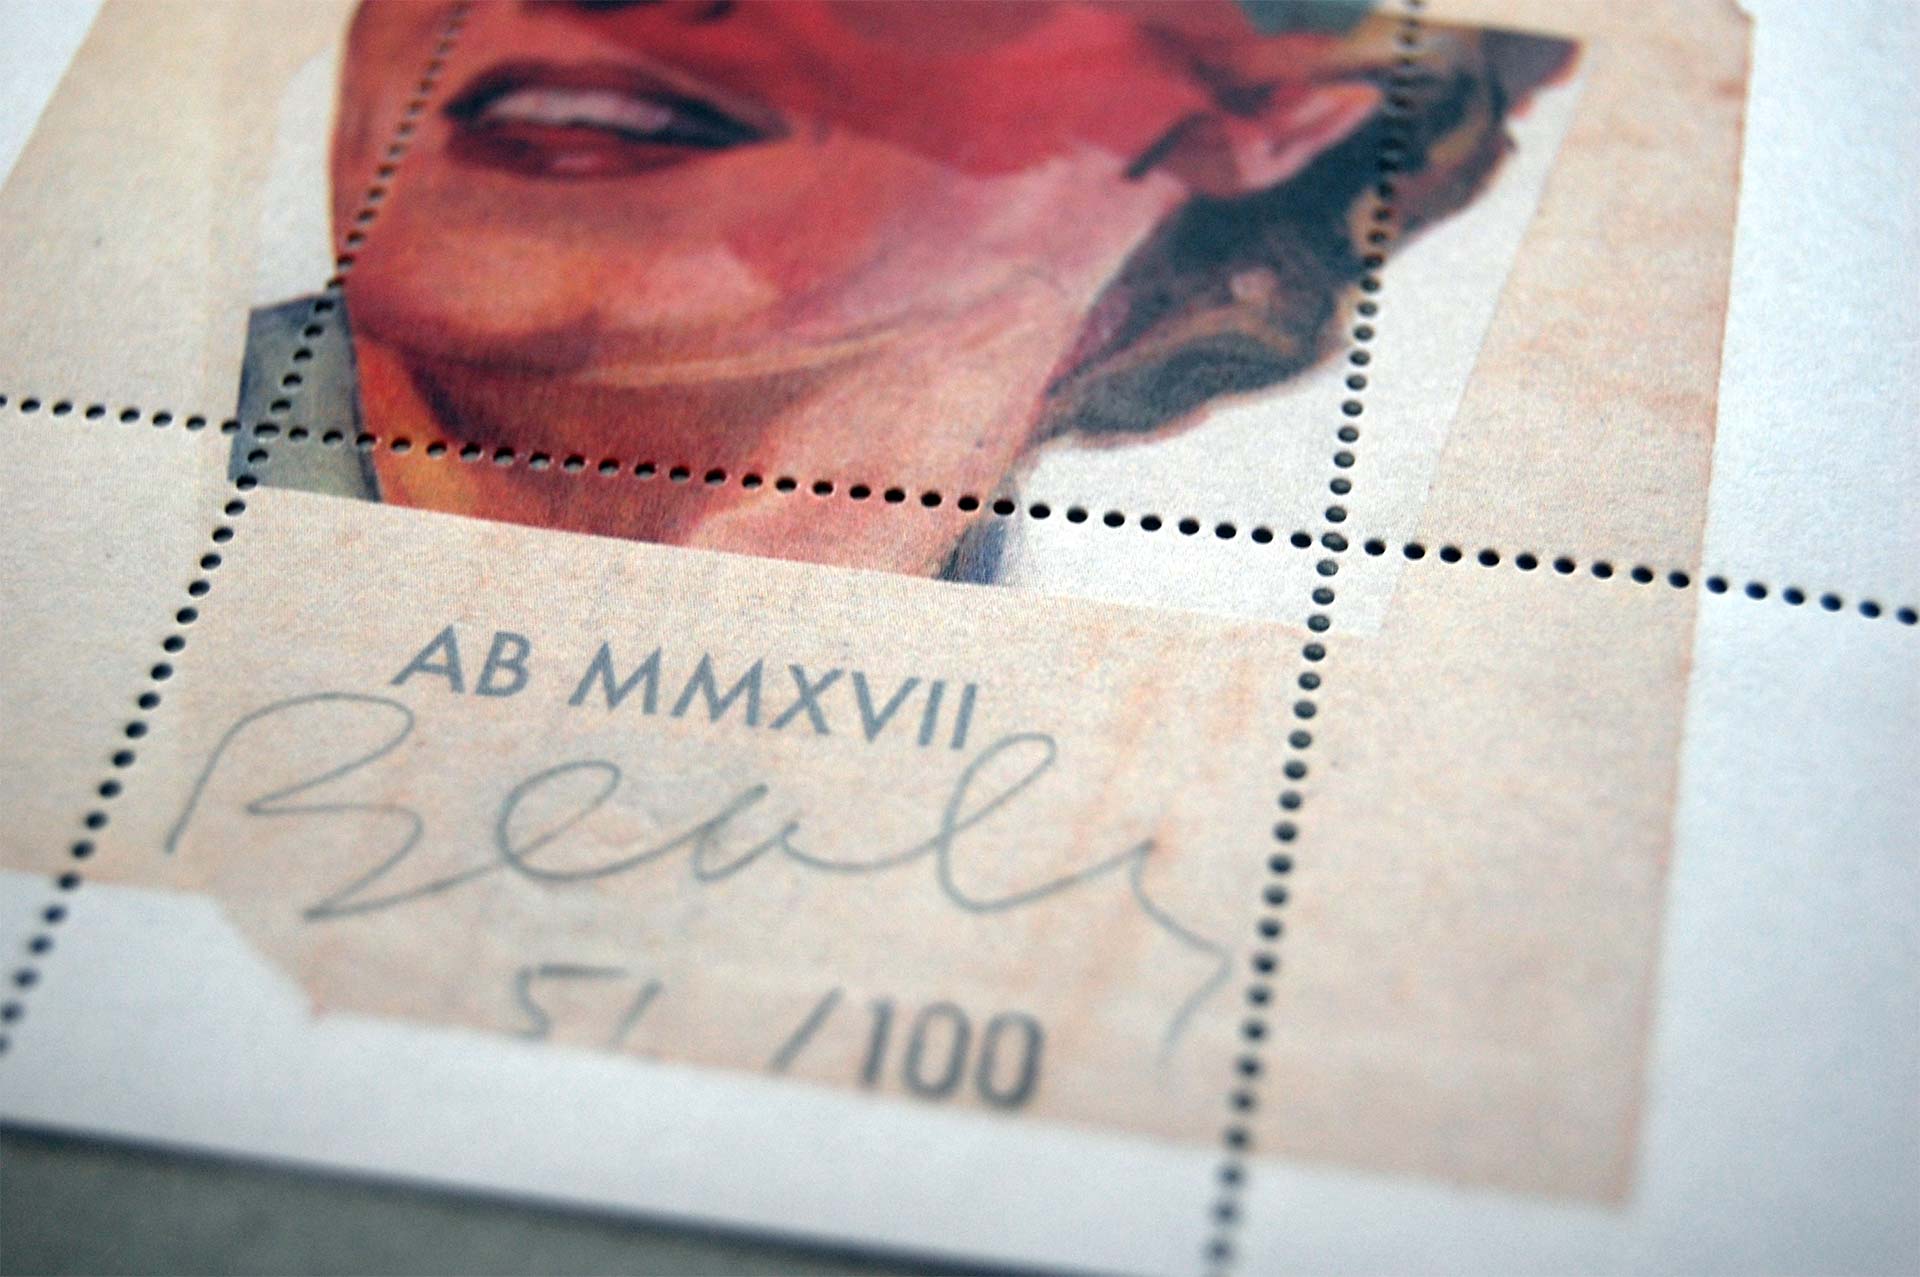 Artist stamp No. 2